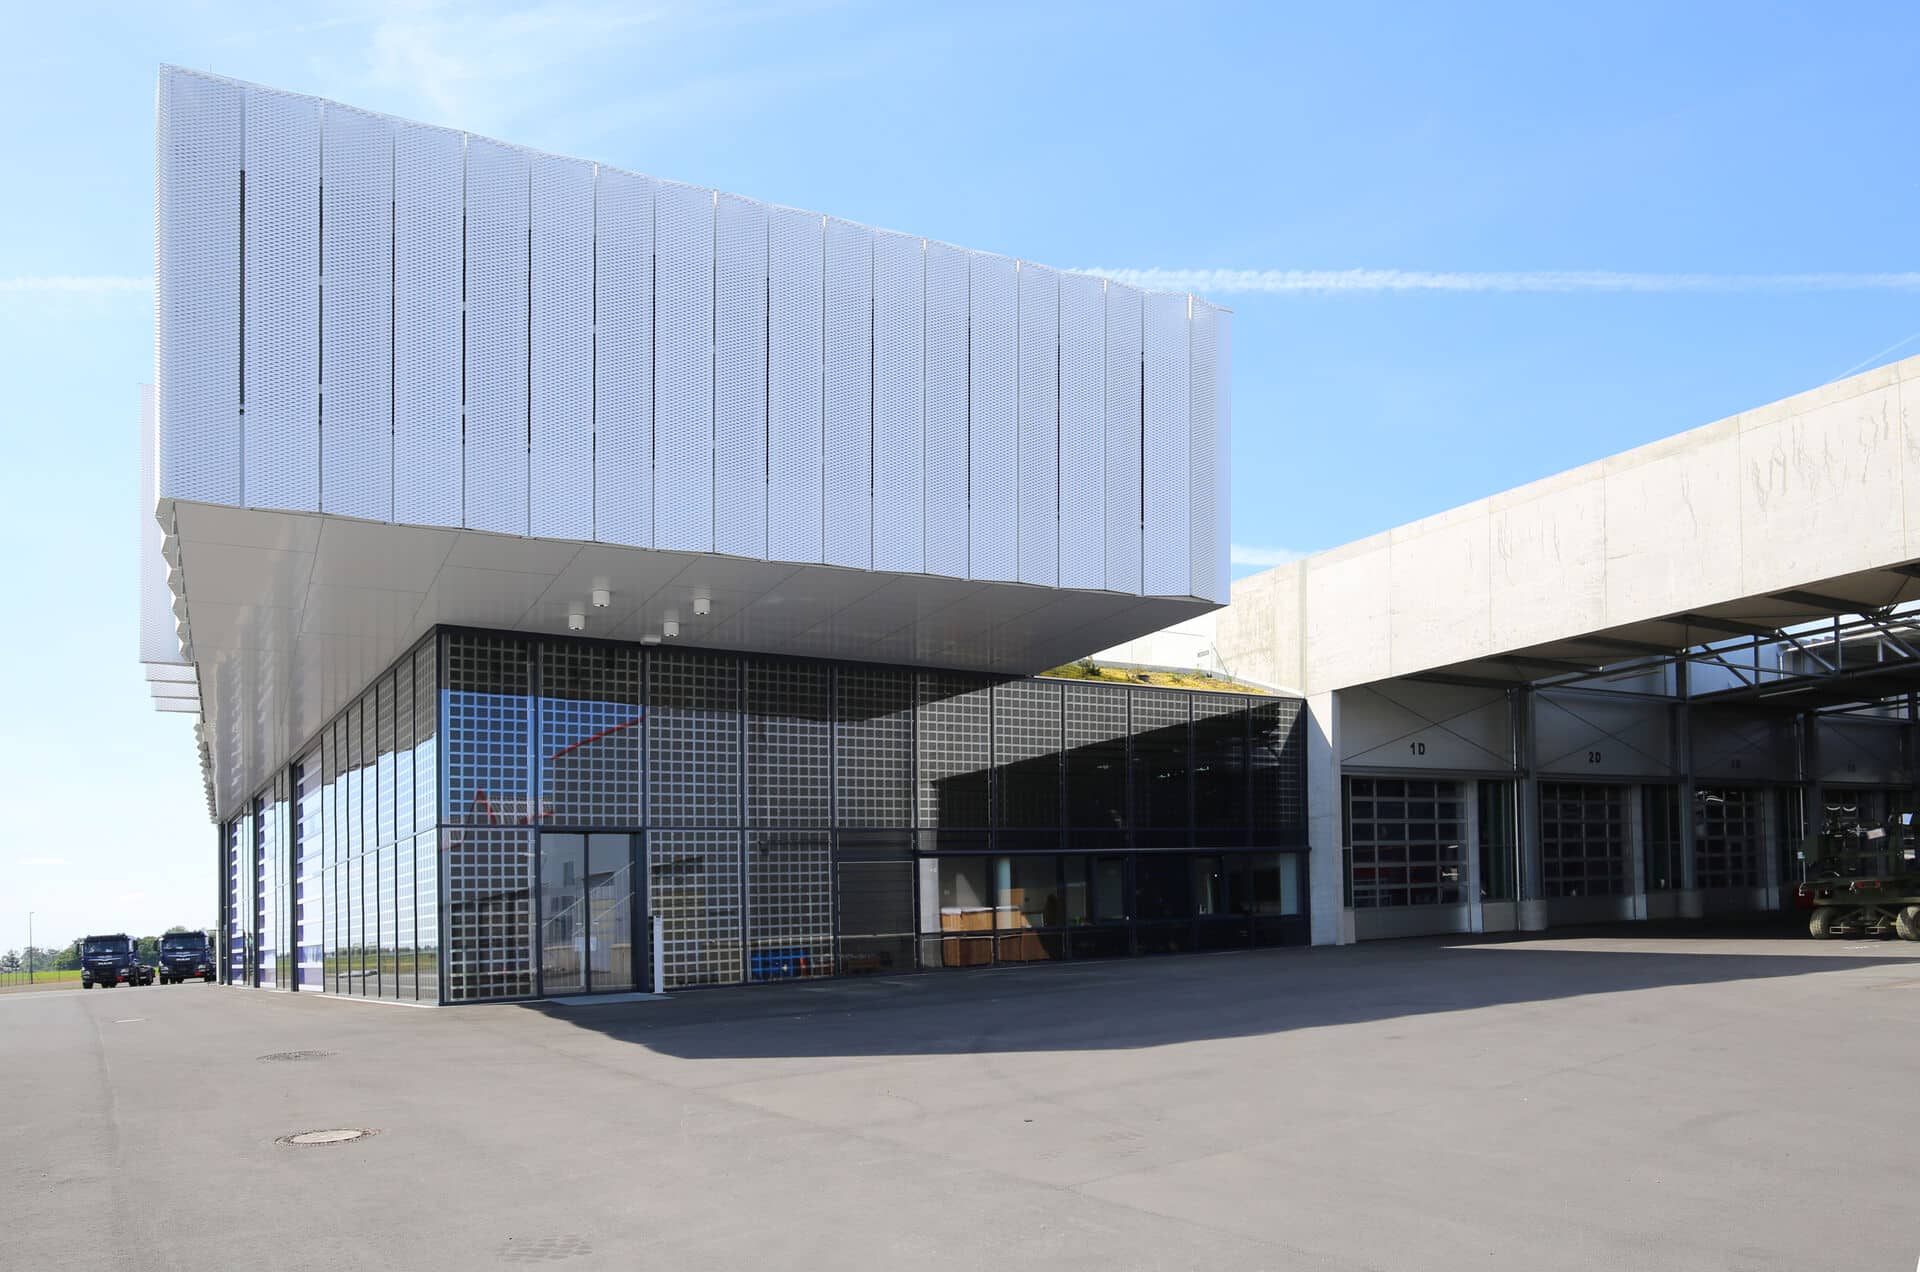 Fassade mit Streckmetall-Faltläden des neuen EMPL-Standorts in Zahna-Elster